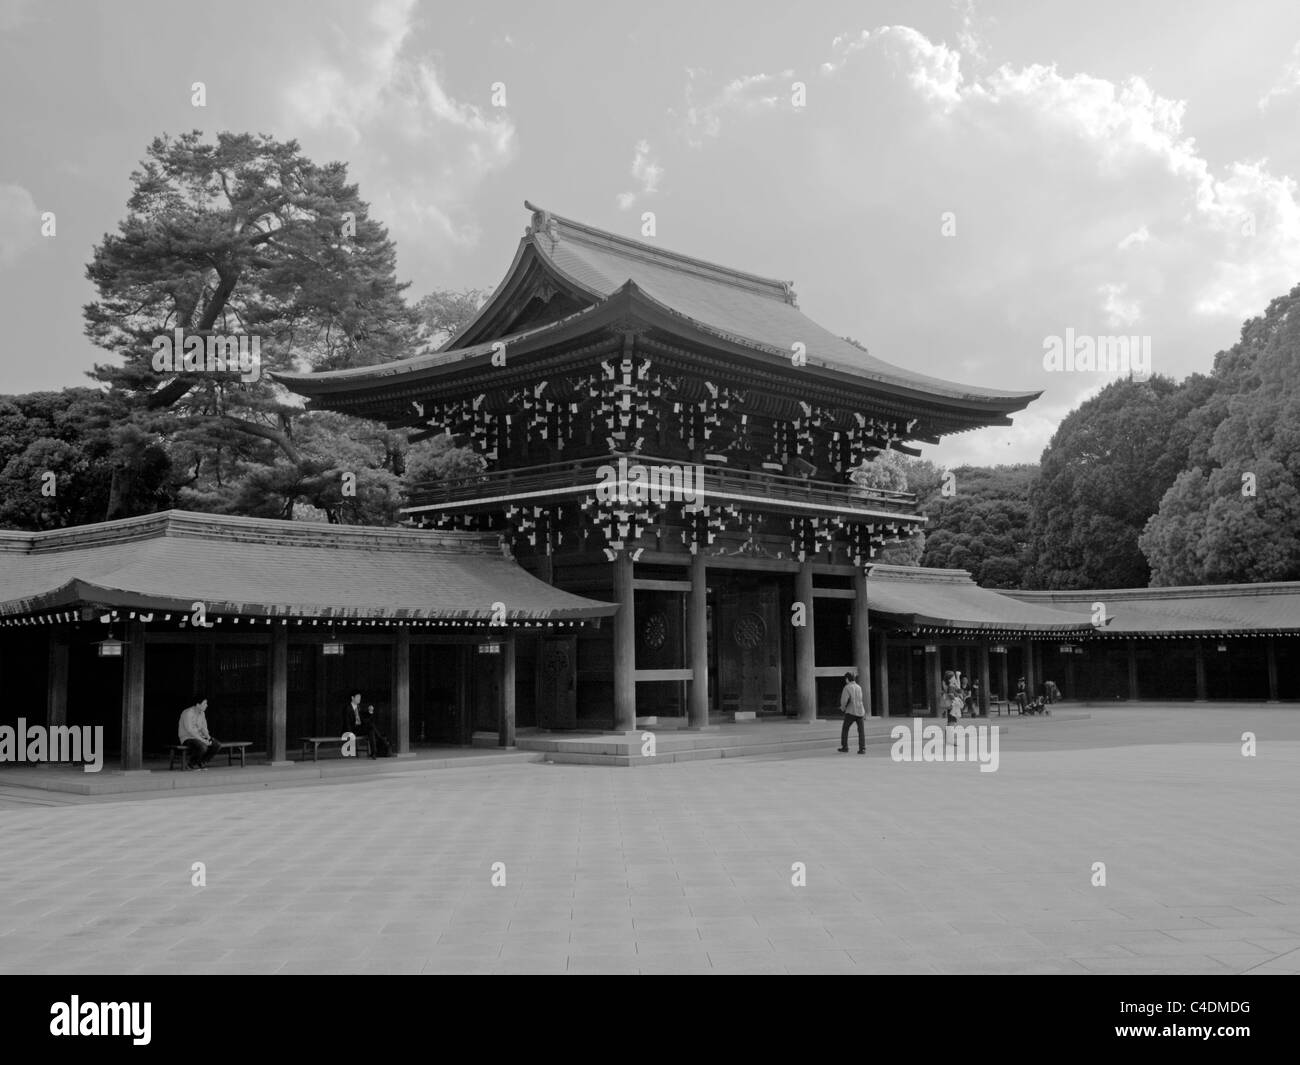 The inner gate of the Meiji Shrine, Tokyo Stock Photo